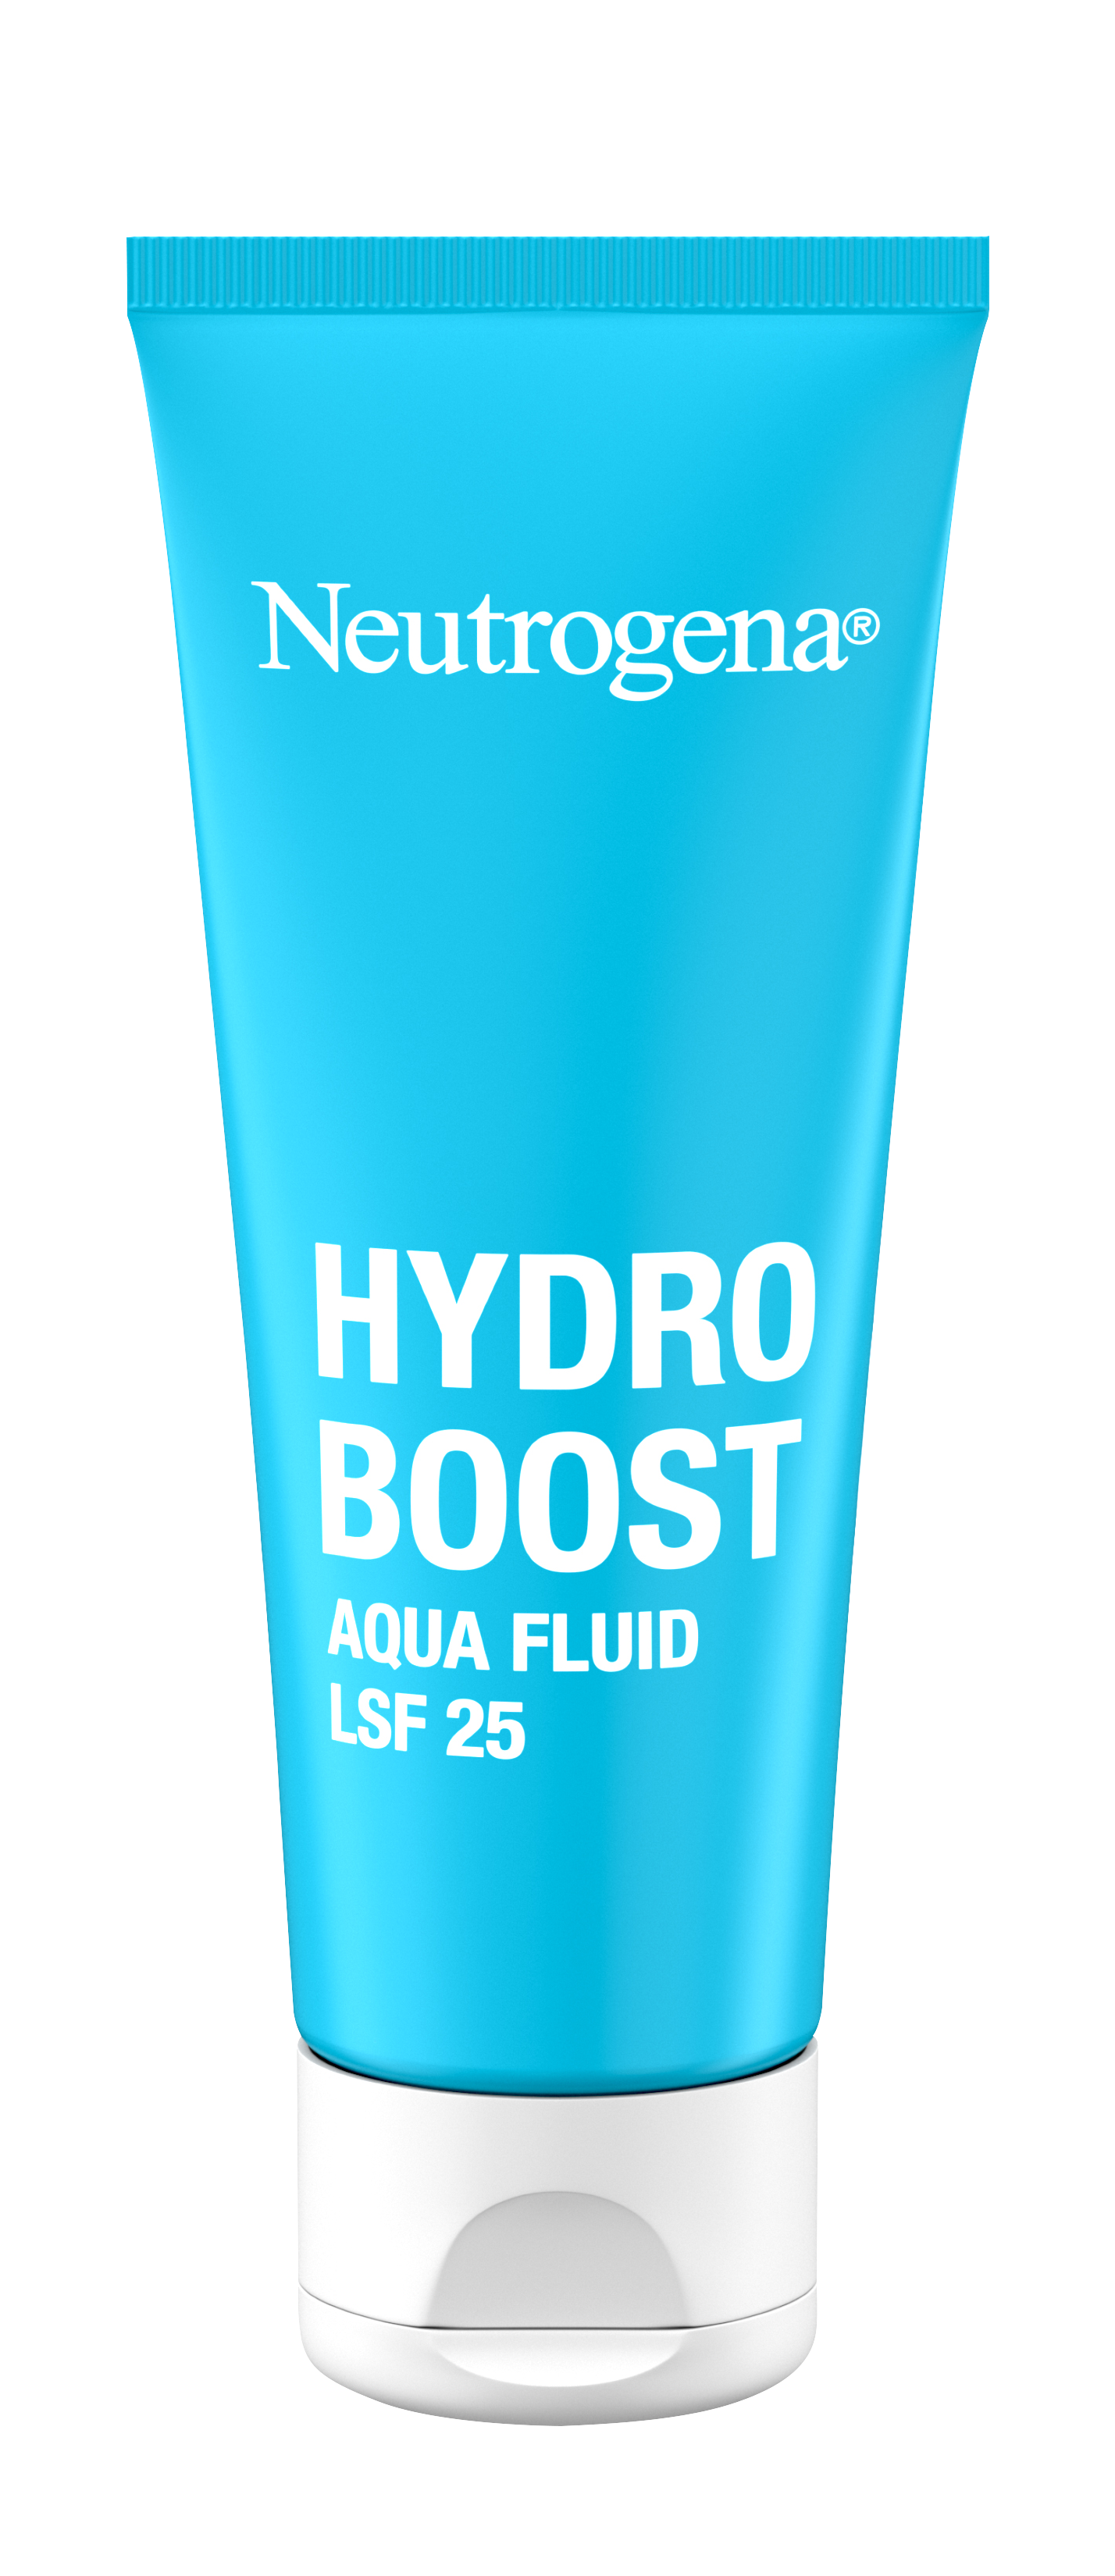 Neutrogena® Hydro Boost Aqua Fluid LSF 25